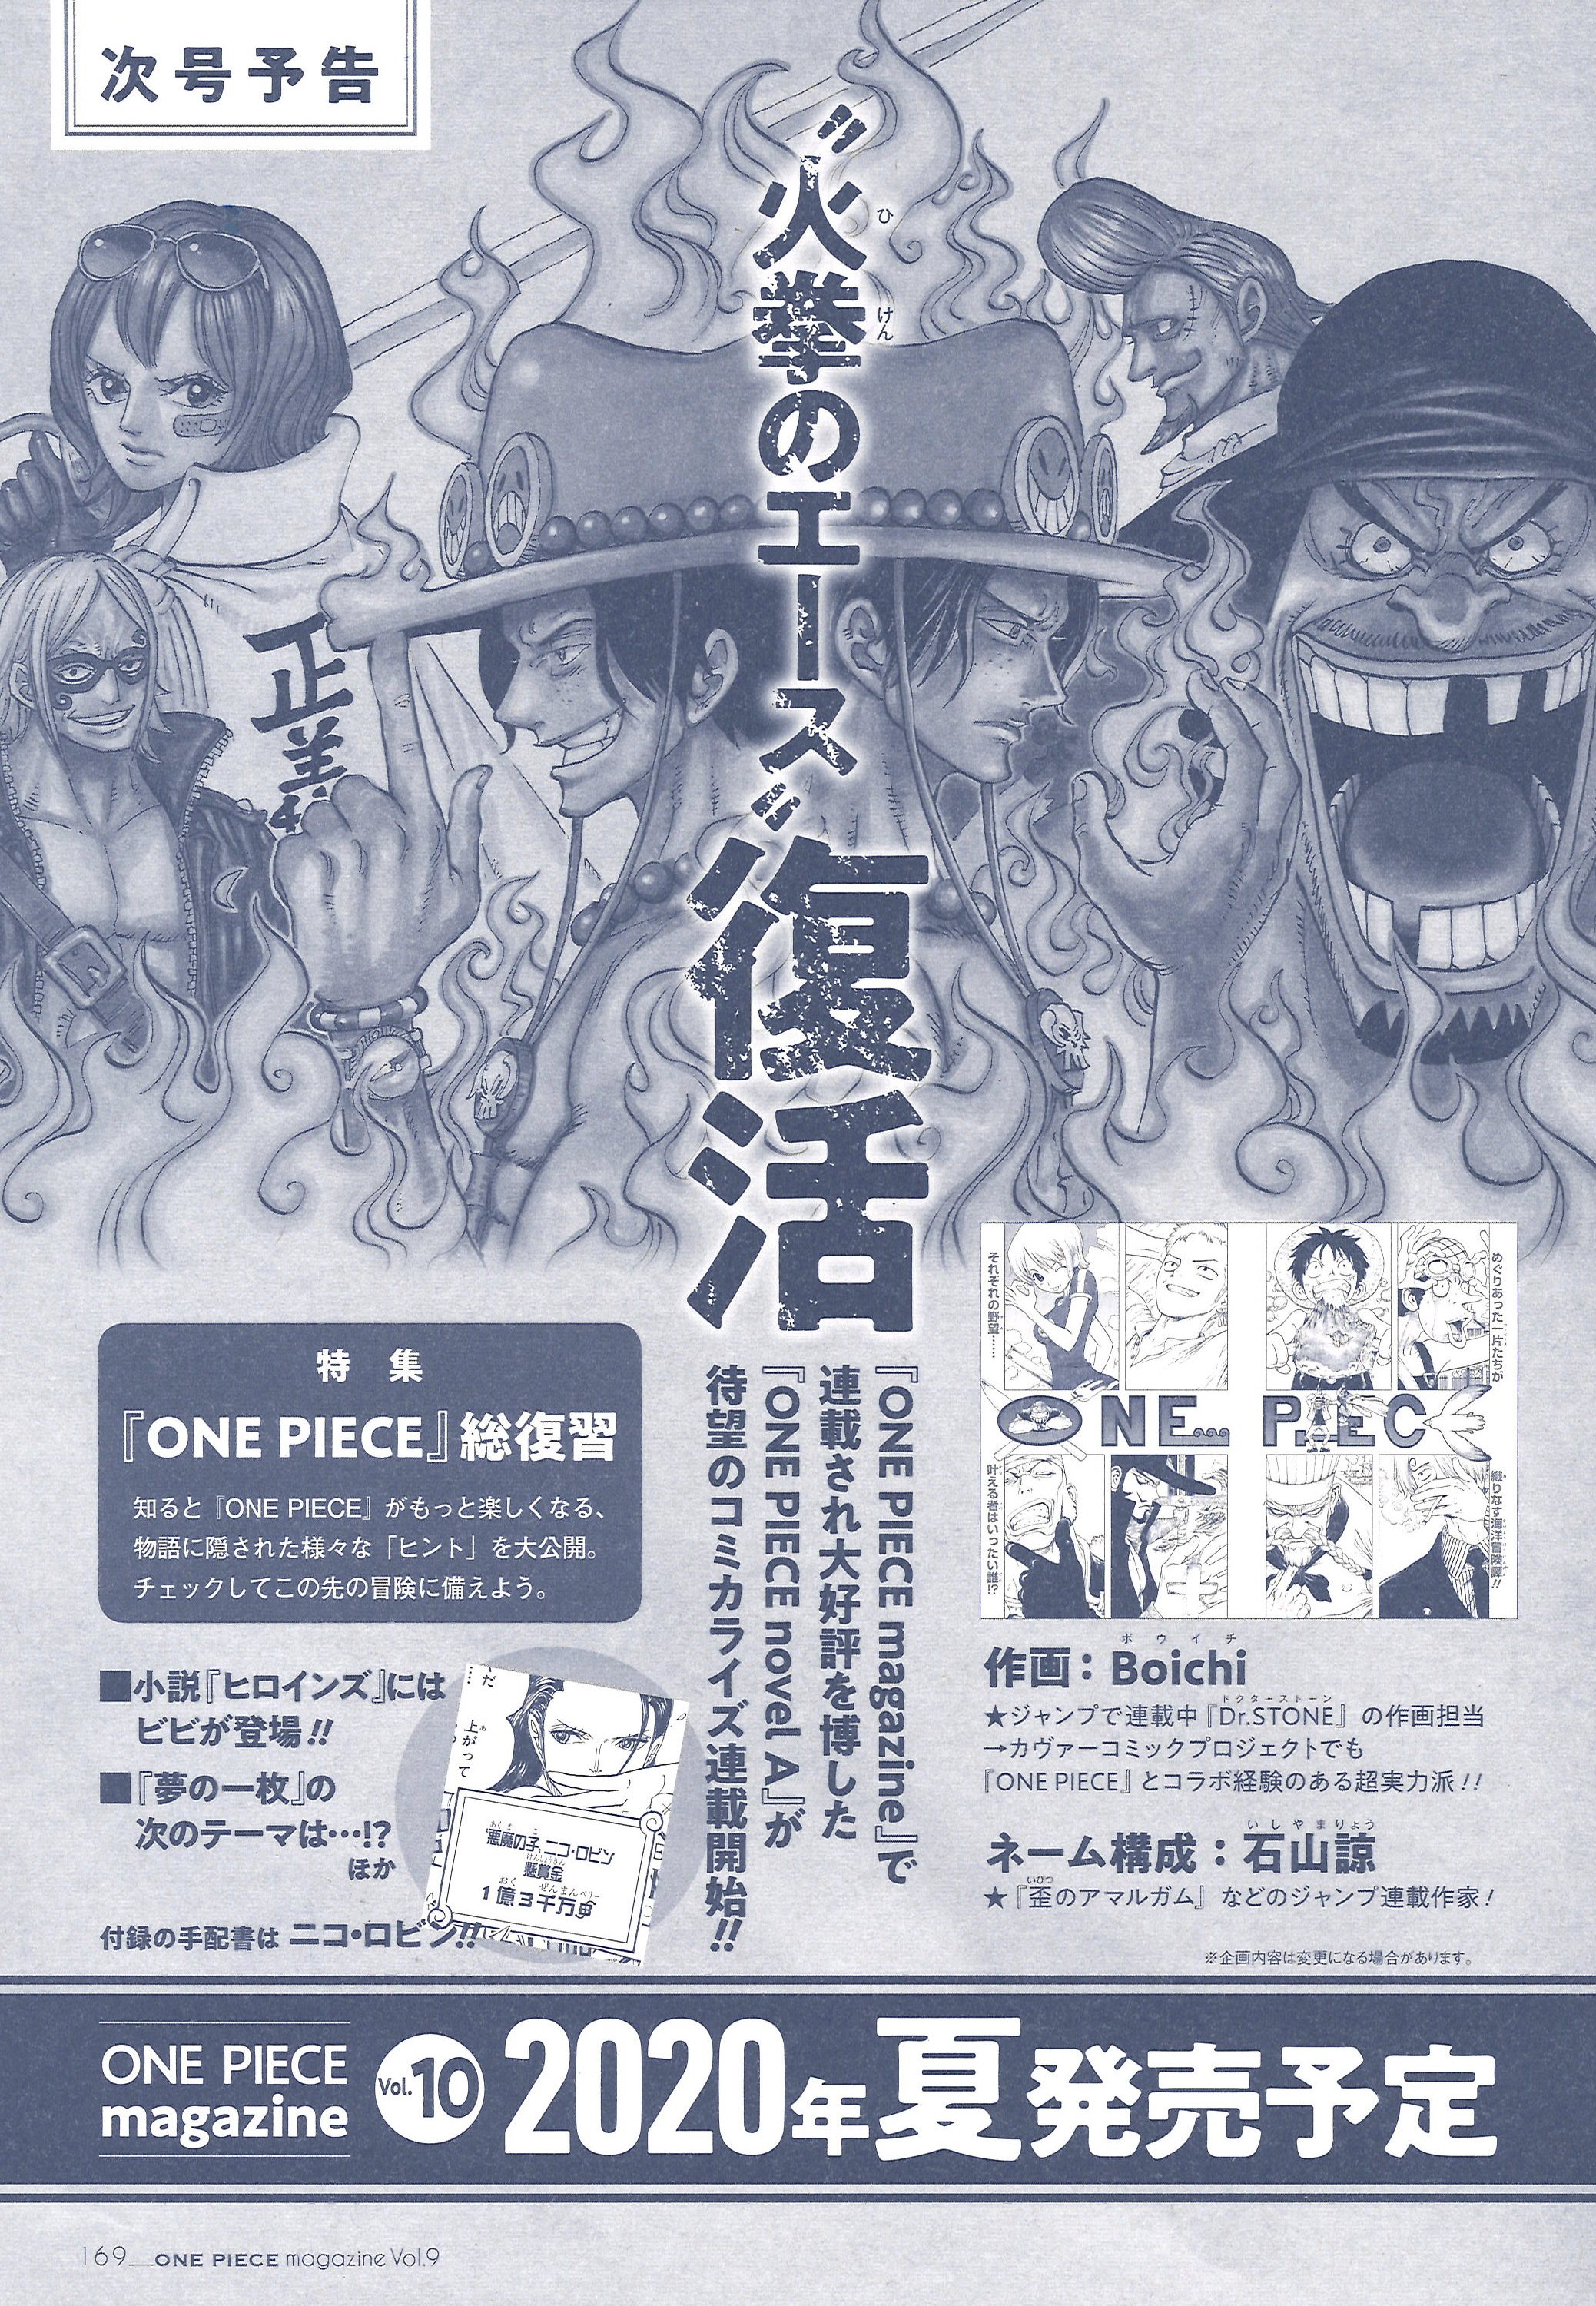 ワンピース マガジン 公式 在 Twitter 上 次号 ワンピース マガジンvol 10 にて あの One Piece Novel A エース がついにコミカライズ連載スタート 作画は Dr Stone のboichi先生が担当してくださいます 超ビッグなプロジェクトに どうぞご期待